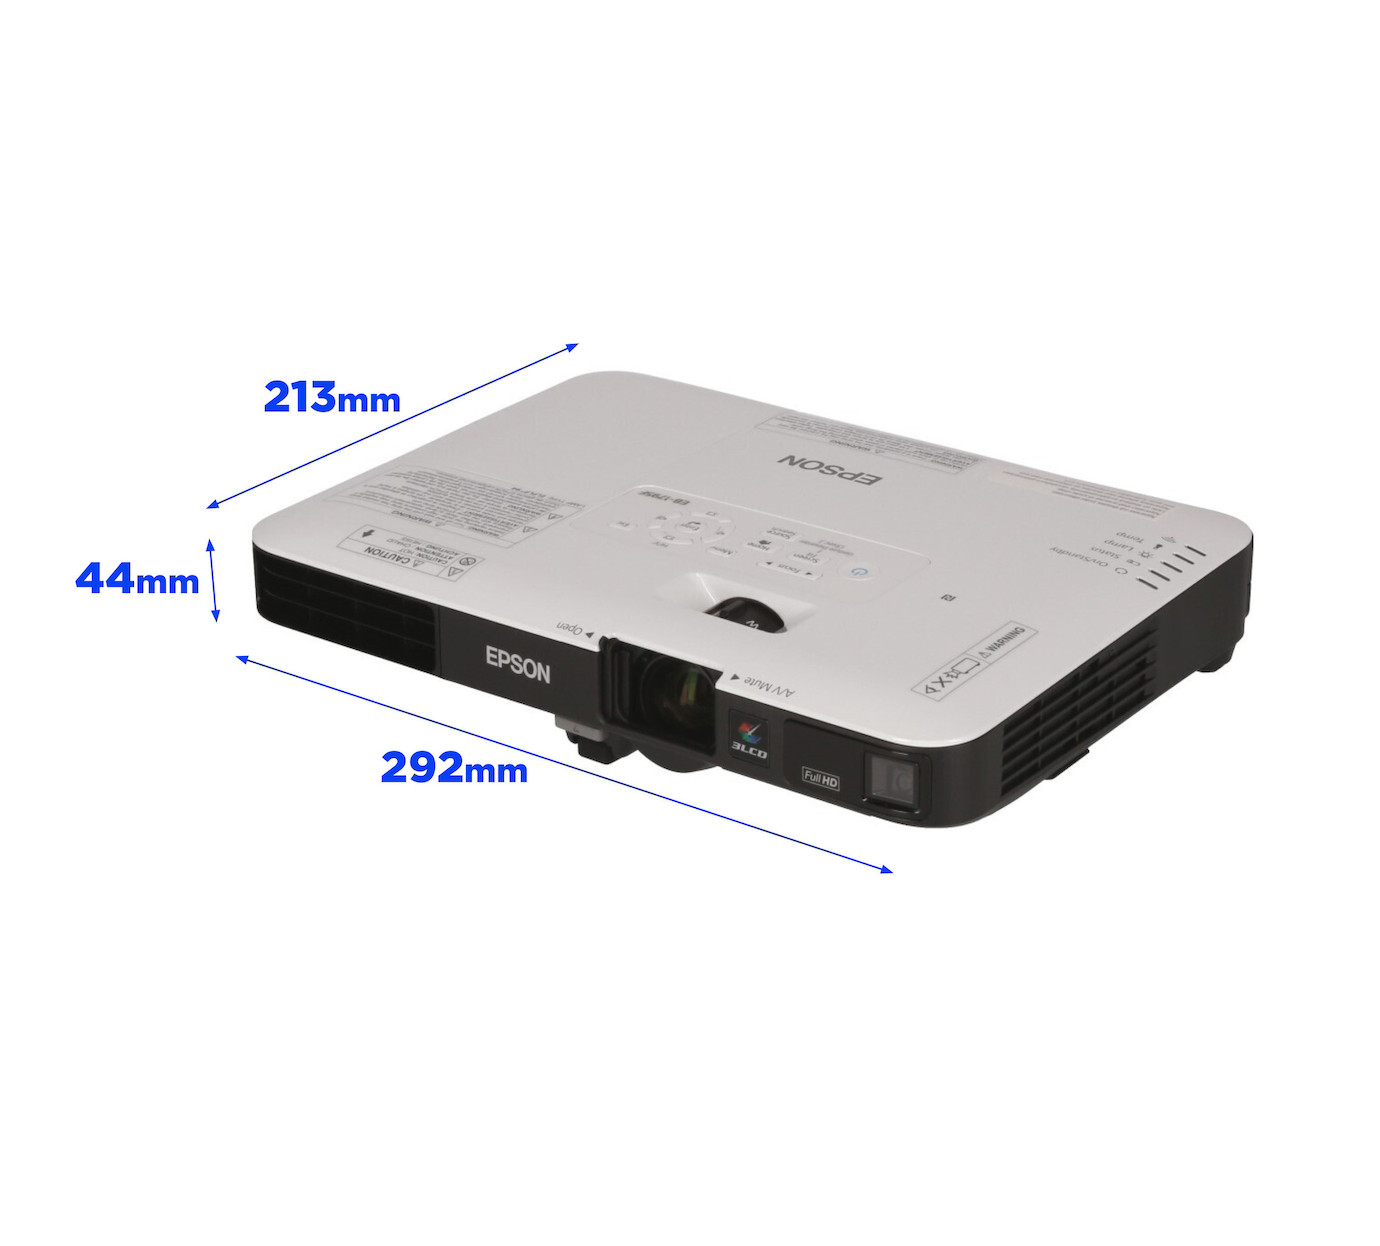 Vorschau: Epson EB-1795F Mobiler Beamer mit 3200 ANSI-Lumen und Full-HD Auflösung